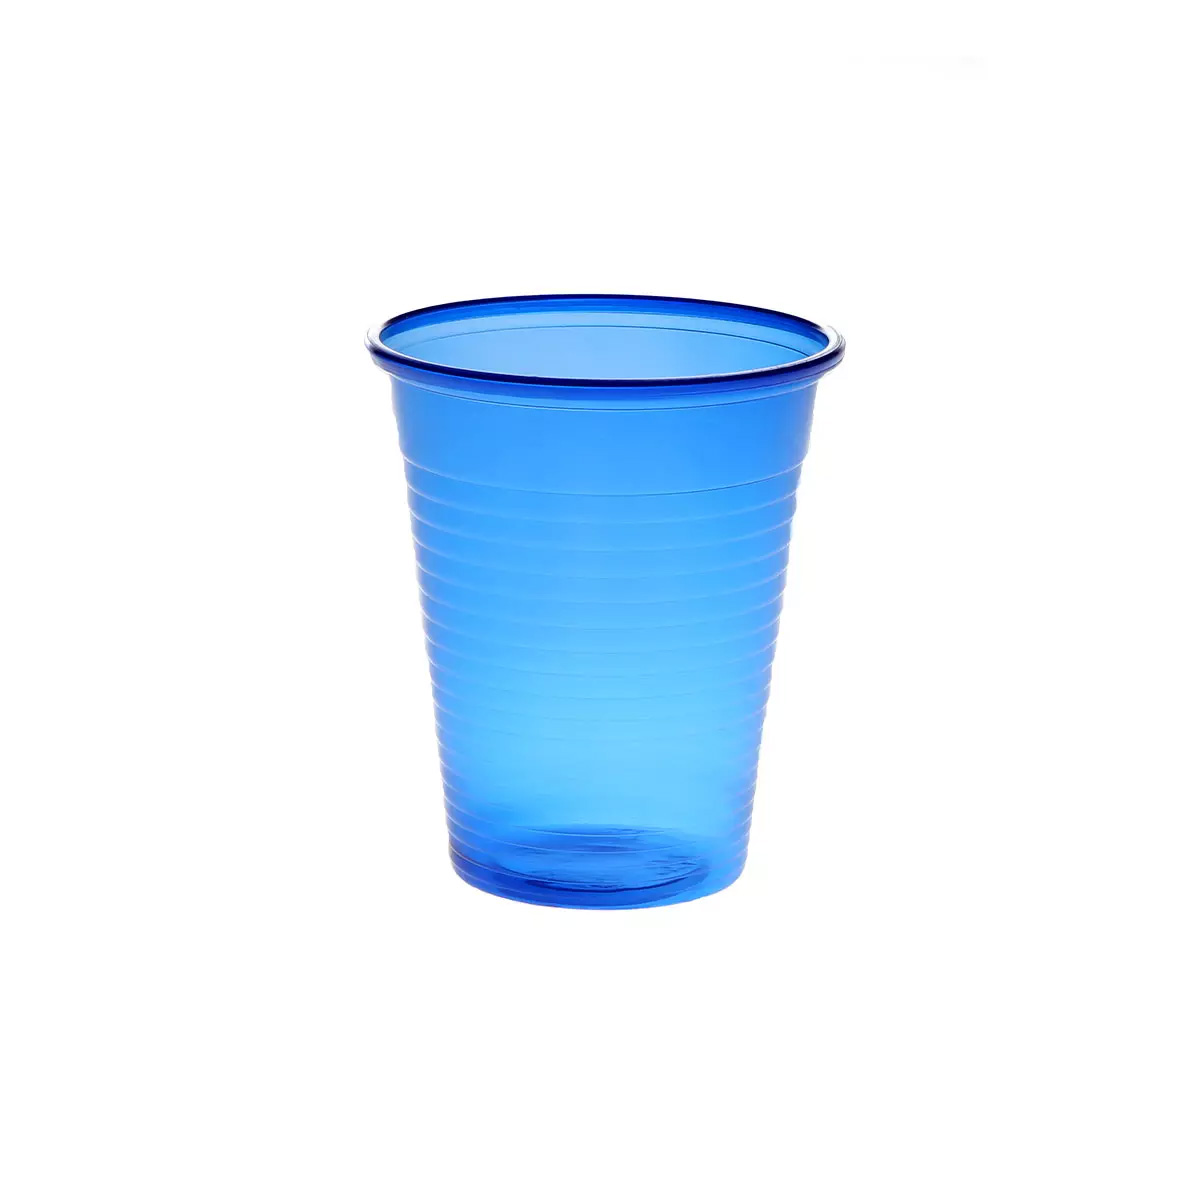 Mundspülbecher Cups 180 ml aus Kunststoff - Mit abgerundetem Rand. Stabil. in vielen verschiedenen Farben.